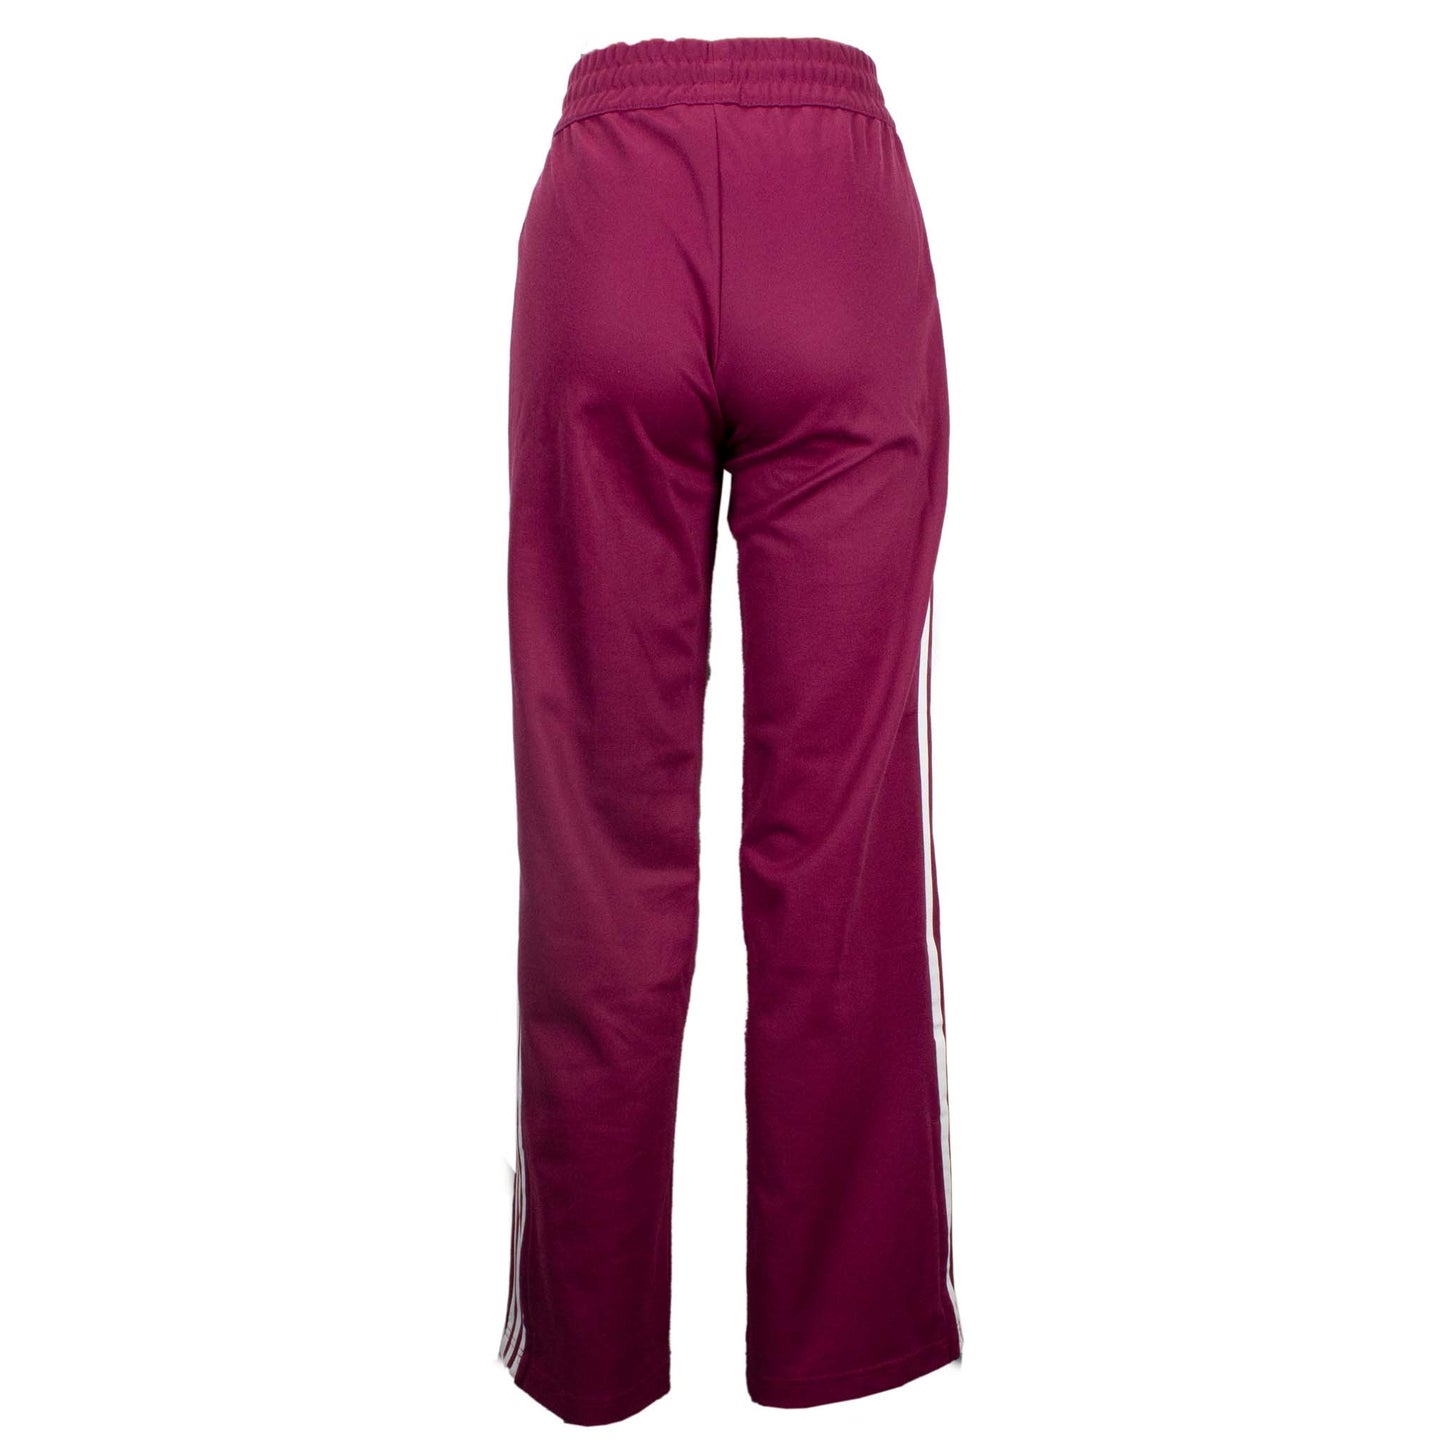 Adidas Originals Contemp Bb Track Pant Damen Hose Sporthose Pink DH3191-2